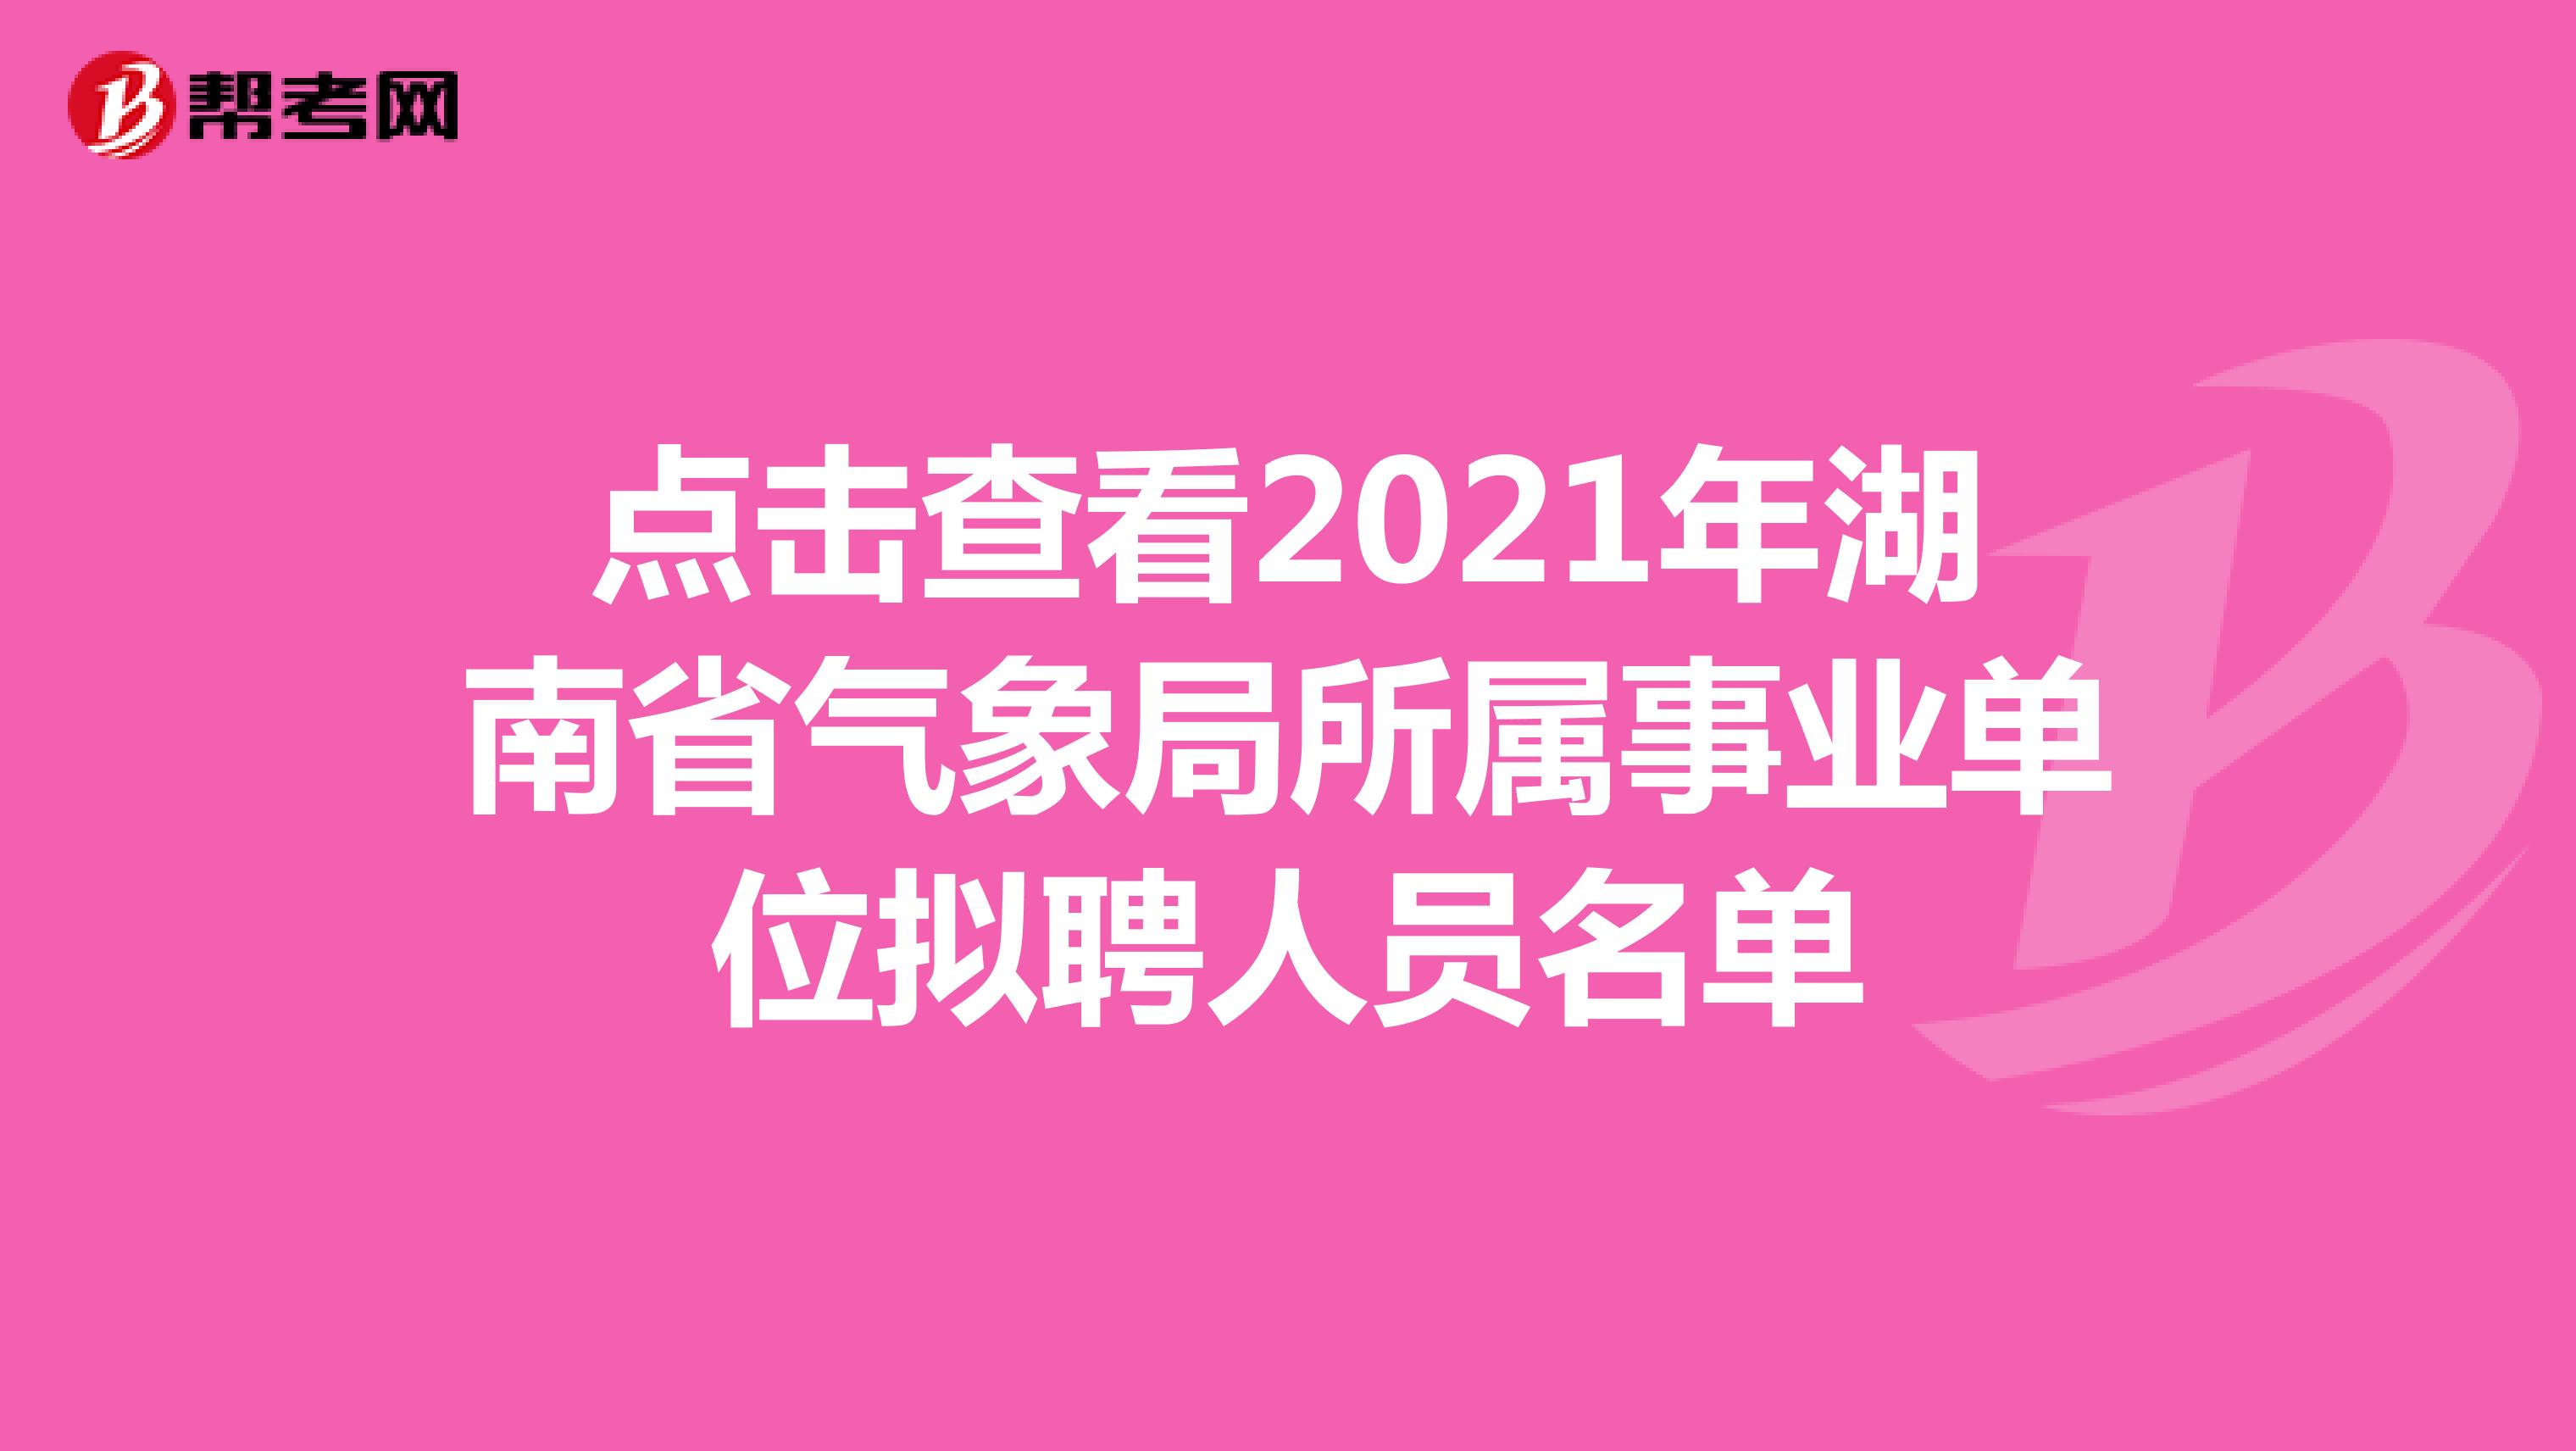 点击查看2021年湖南省气象局所属事业单位拟聘人员名单